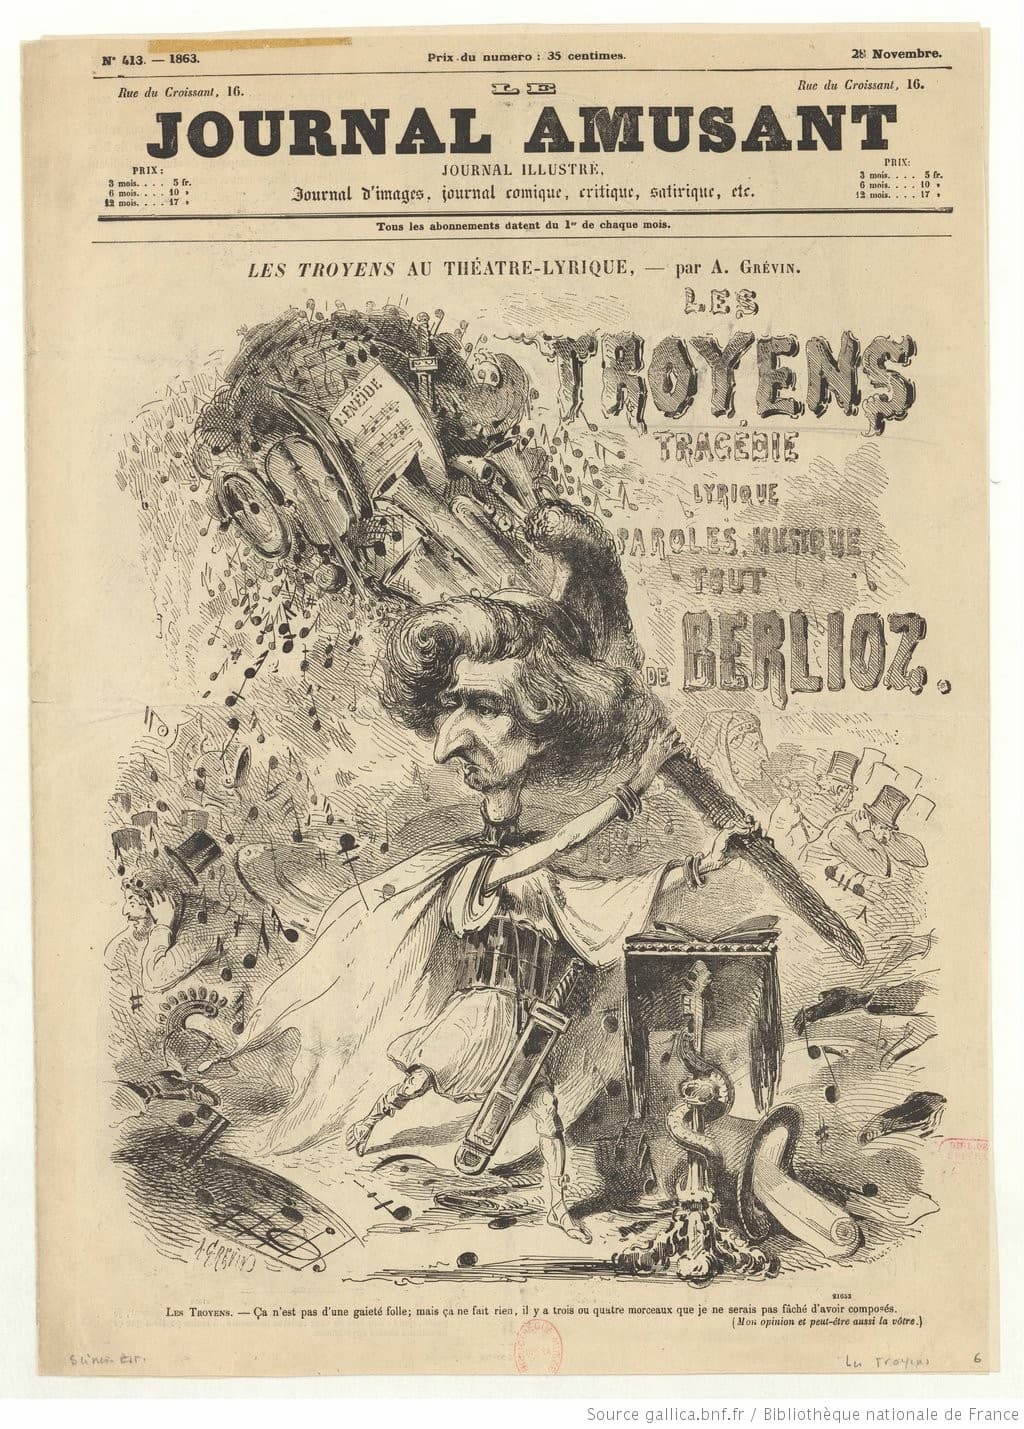 Grévin: ‘Les Troyens au Théâtre Lyrique’, Journal amusant, 28 Nov 1863, cover (Gallica, ark:/12148/btv1b53118264k)